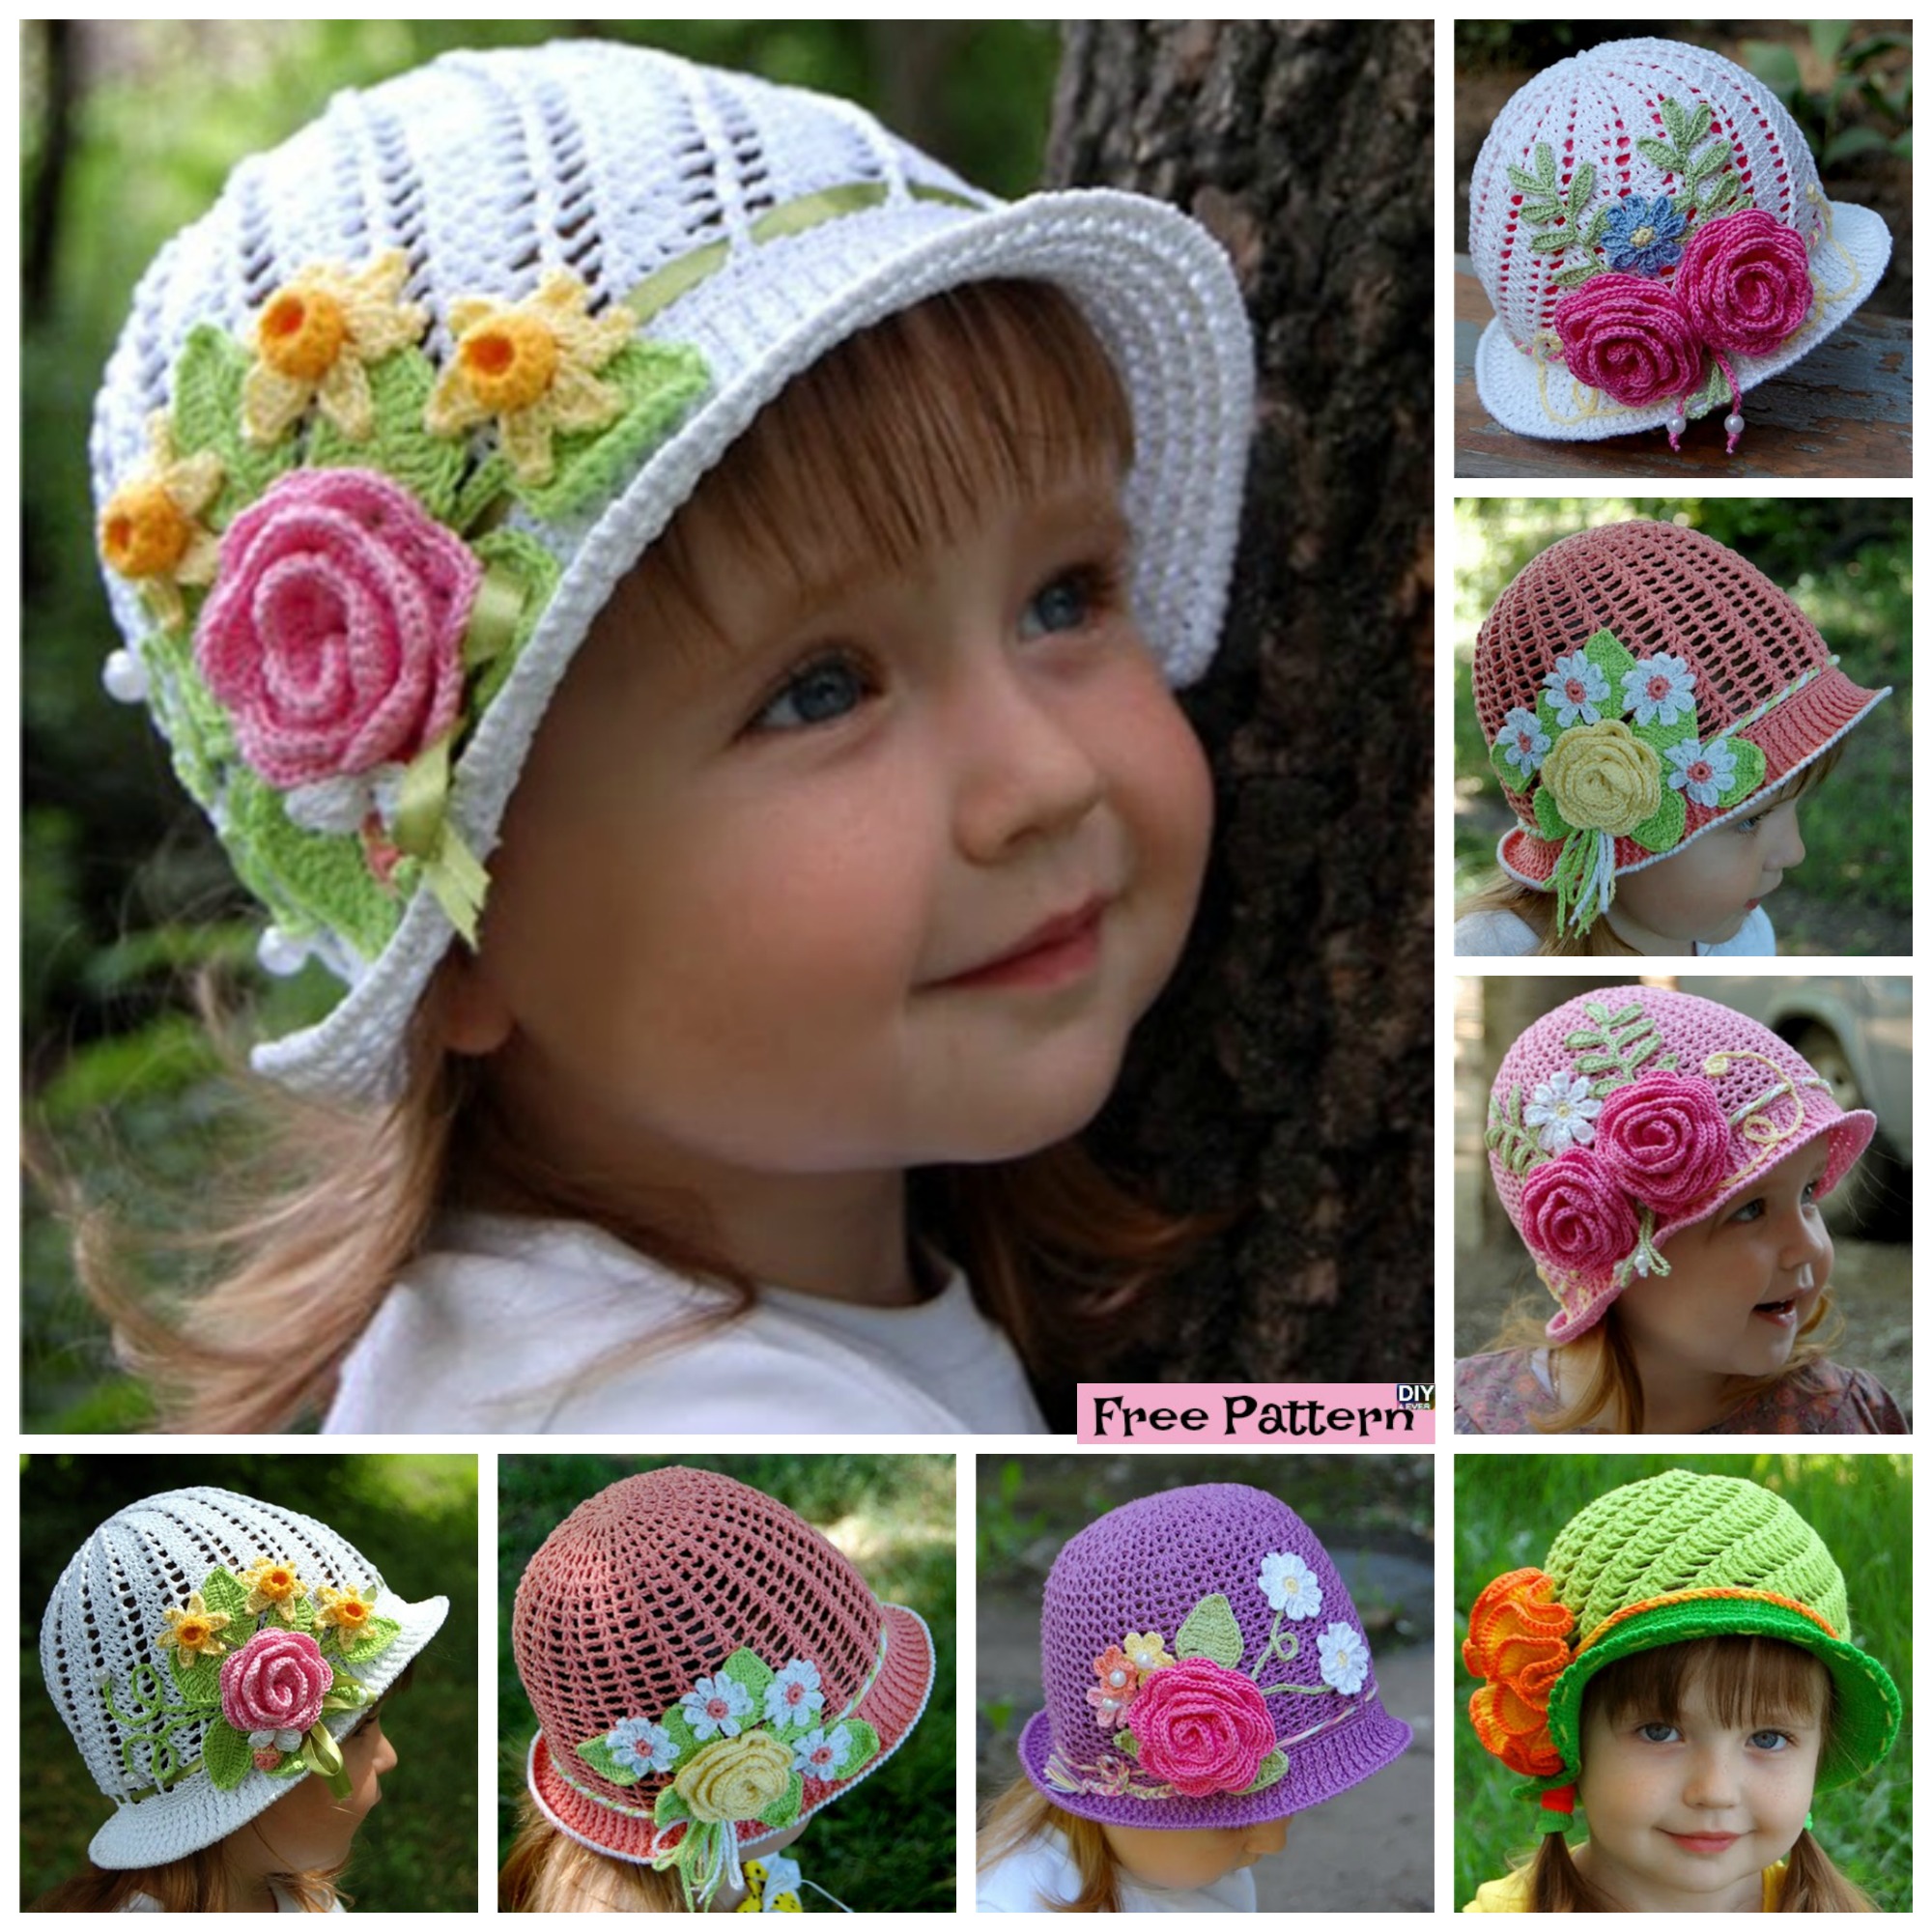 diy4ever -Crochet Flower Sun Hats - Free Pattern